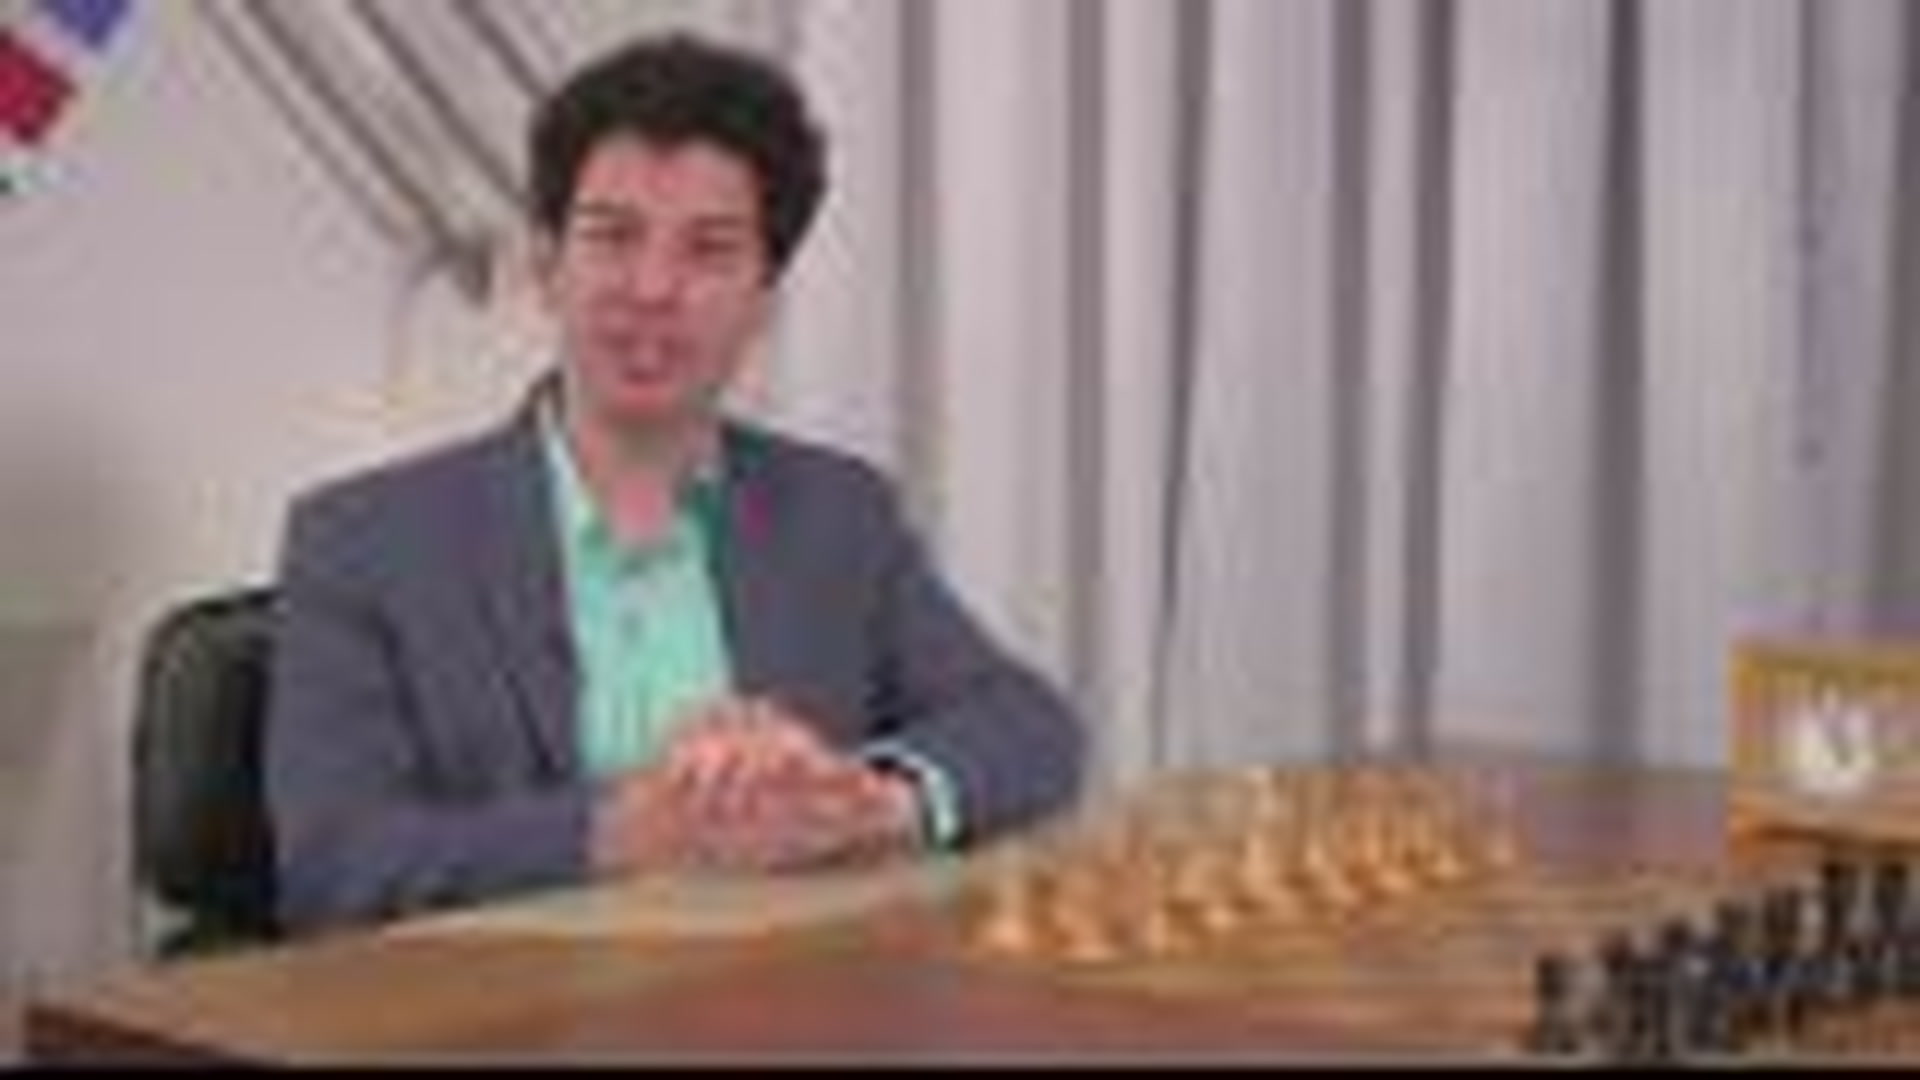 Xadrez: sex toy, código morse e engine; entenda toda a polêmica entre  Magnus Carlsen e Hans Niemann